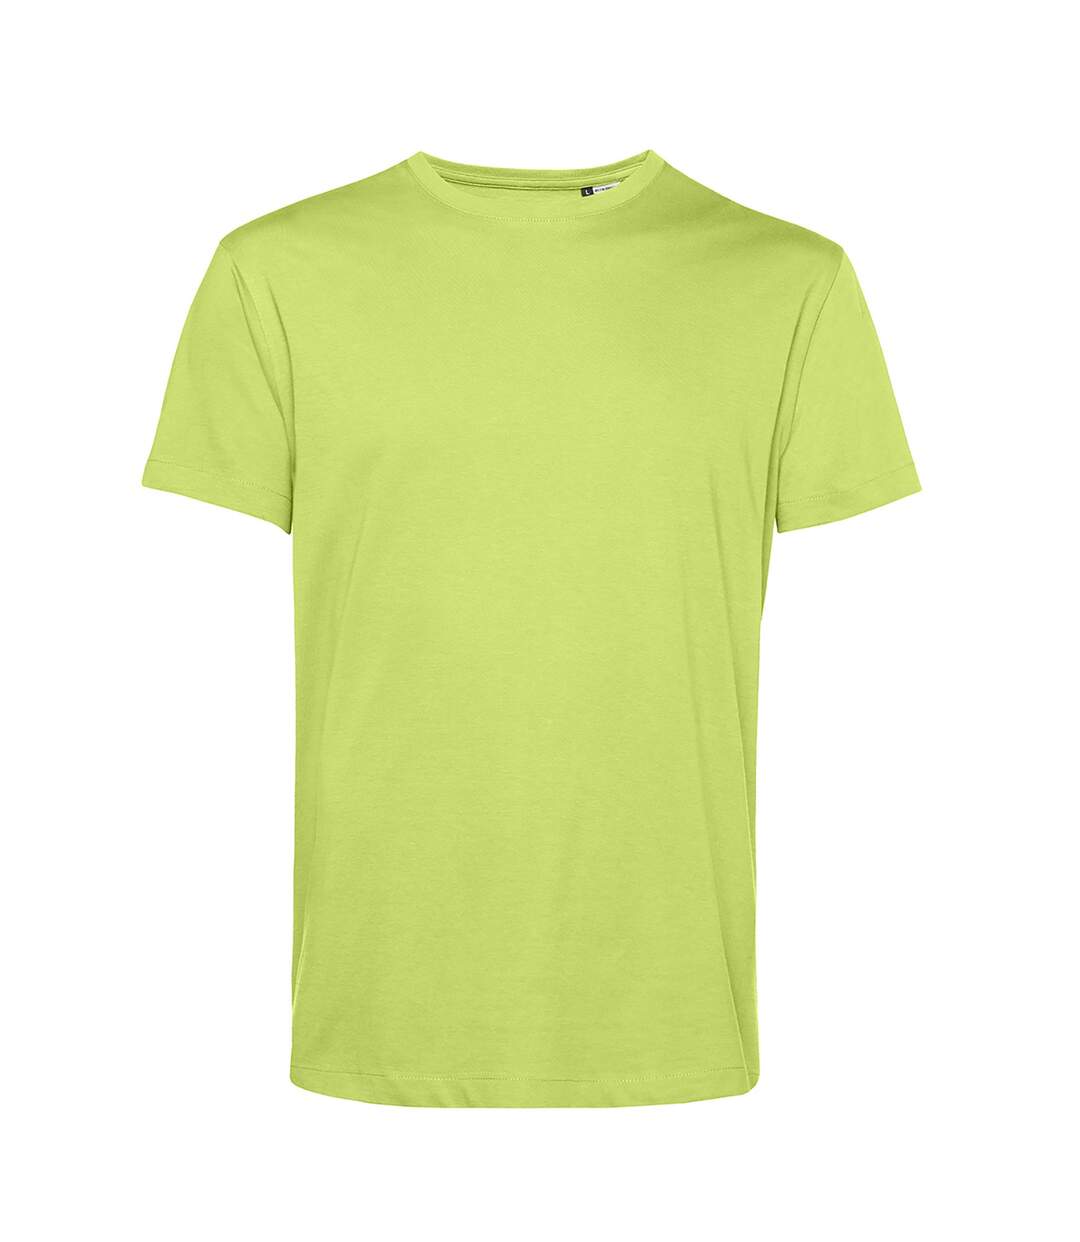 B&C T-shirt biologique E150 pour hommes (Vert citron) - UTBC4658